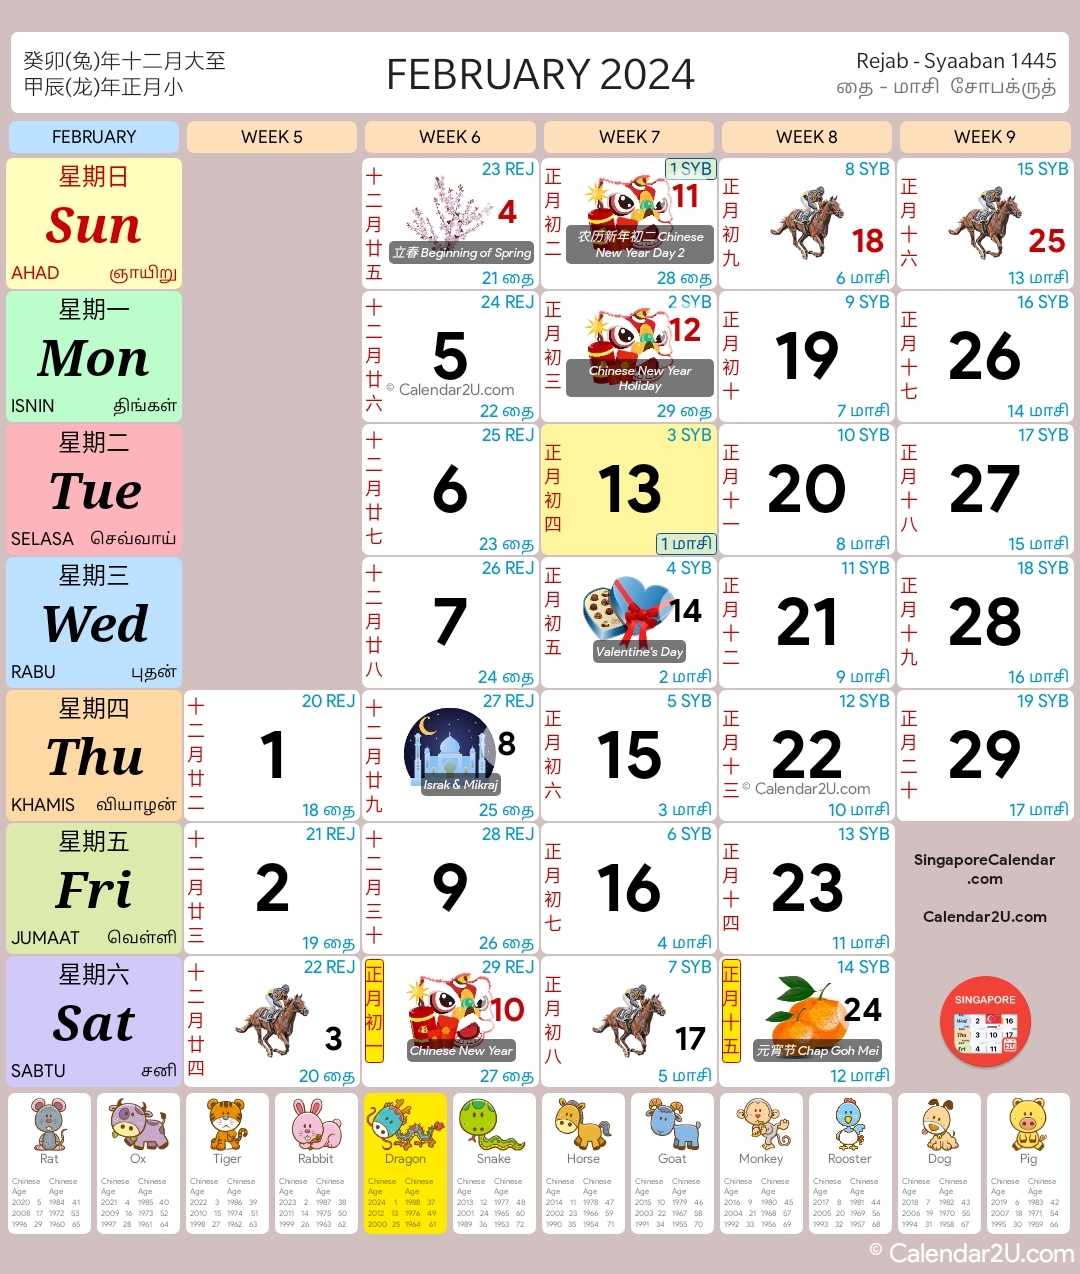 Singapore Calendar Year 2024 - Singapore Calendar with Free Printable Calendar 2024 Singapore